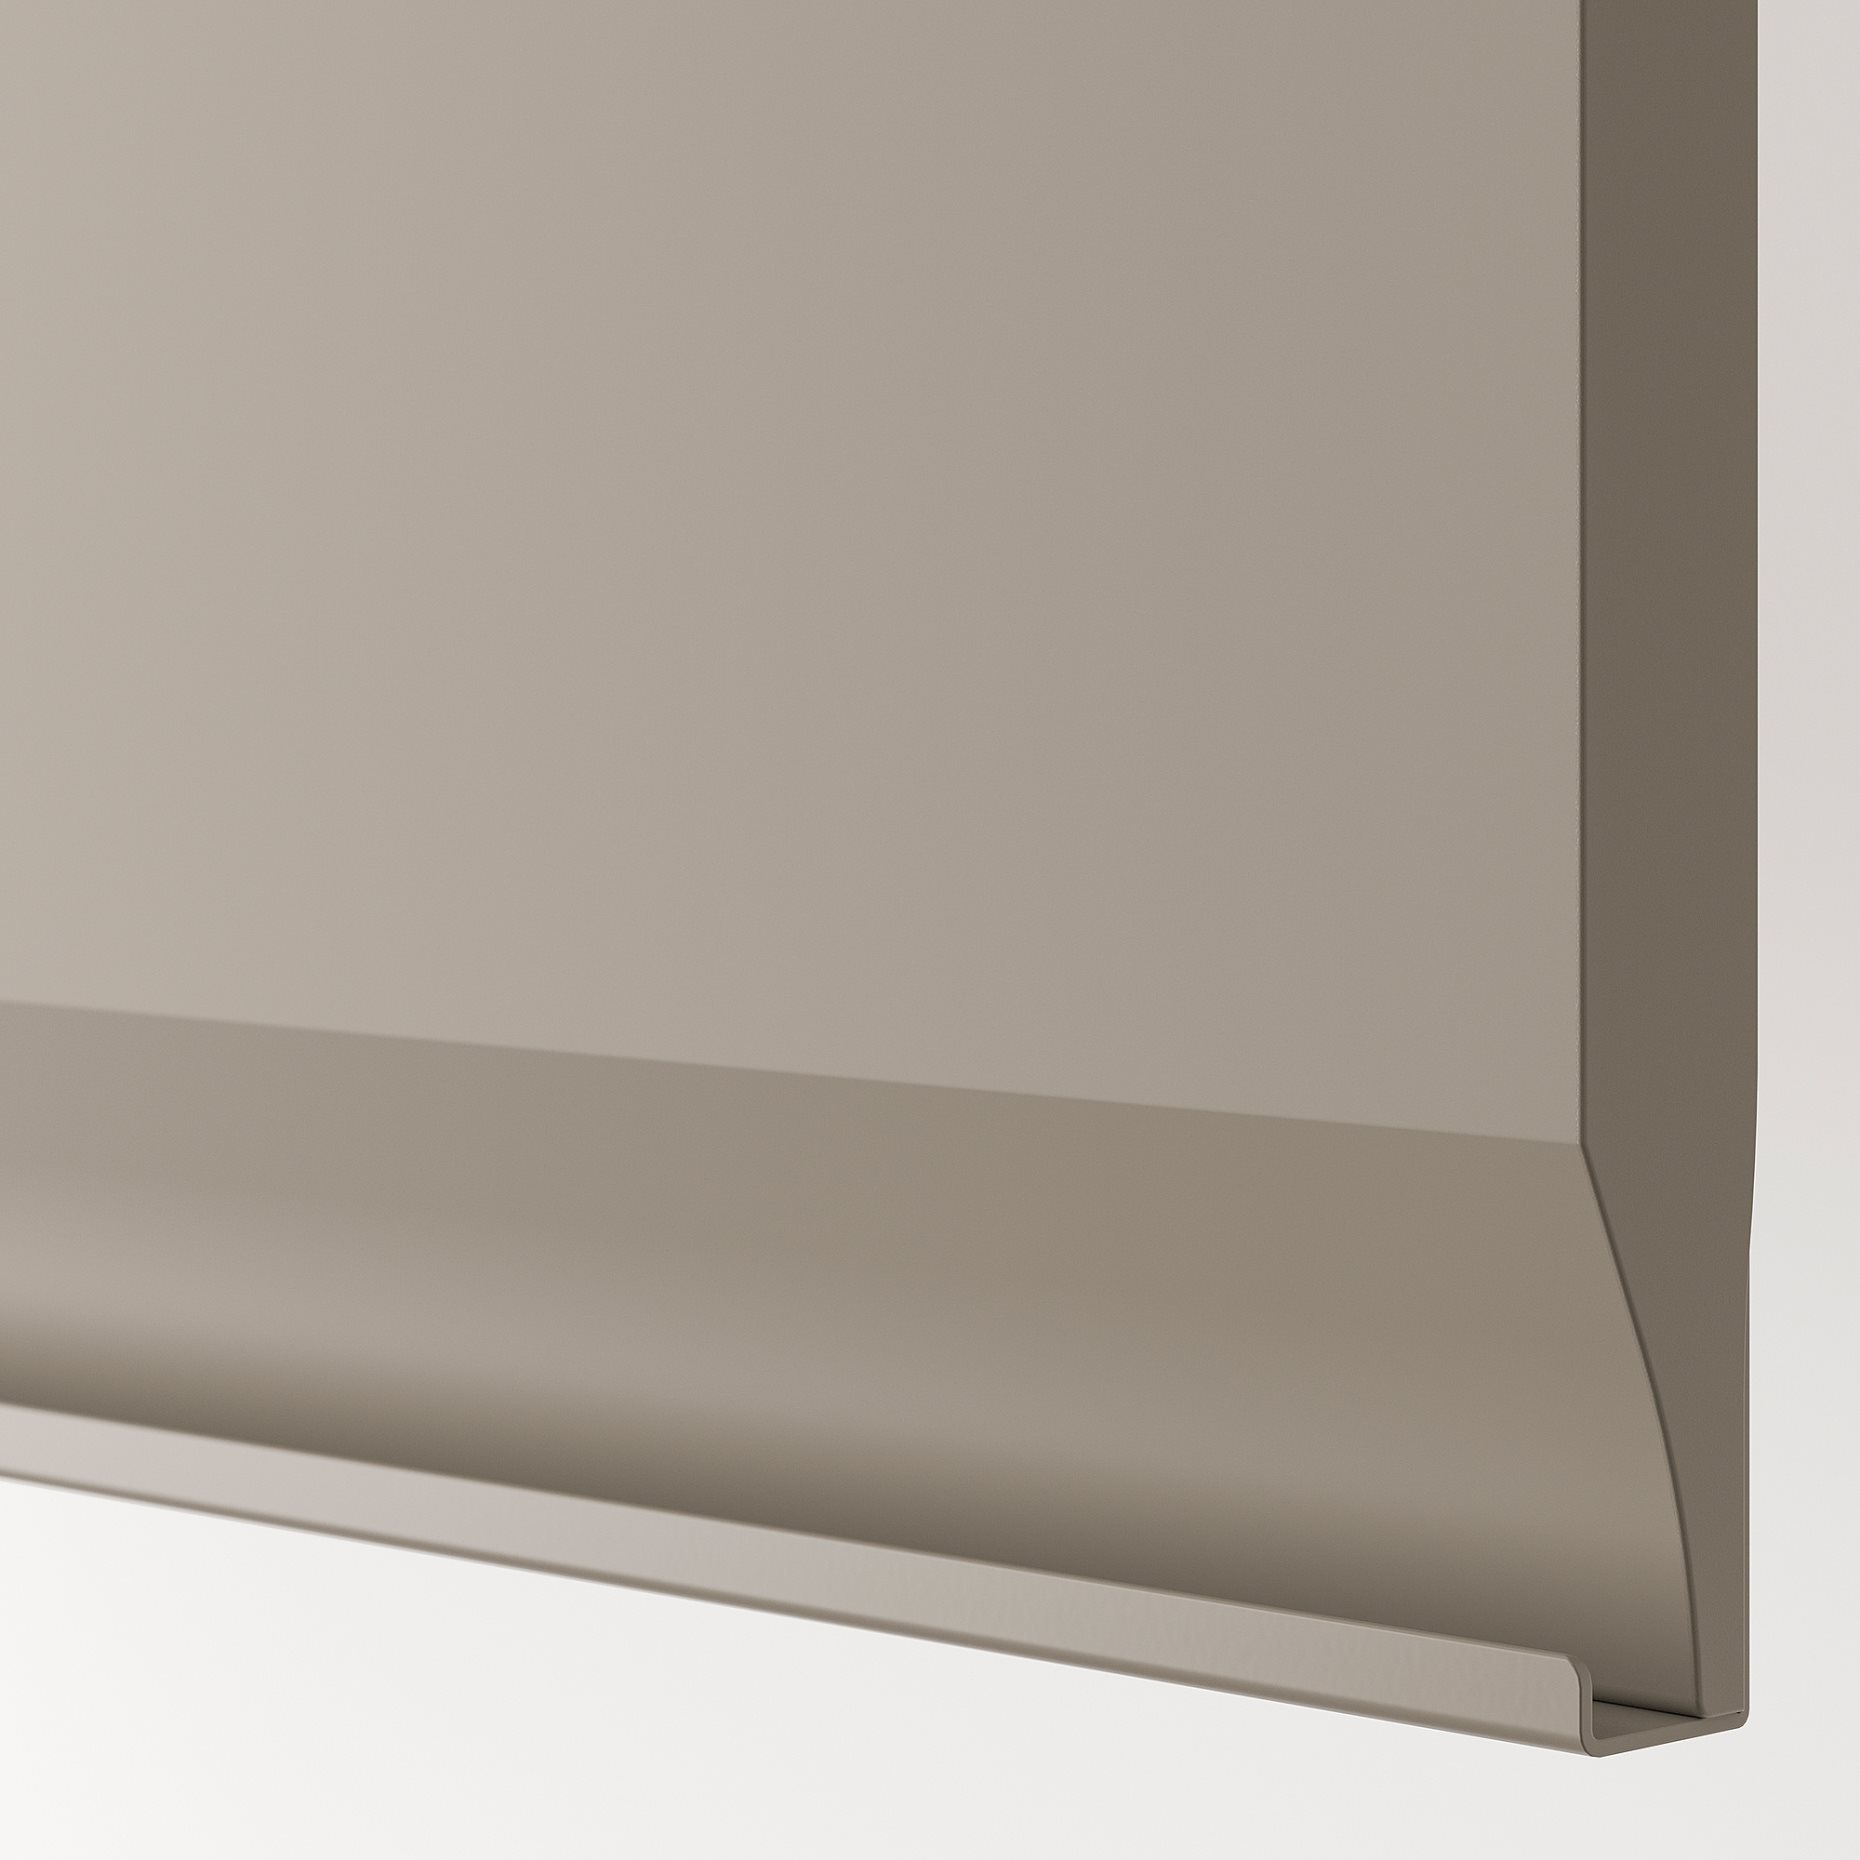 METOD, ψηλό ντουλάπι με εσωτερικά εξάρτηματα για τα είδη καθαρισμού, 40x60x220 cm, 594.920.29